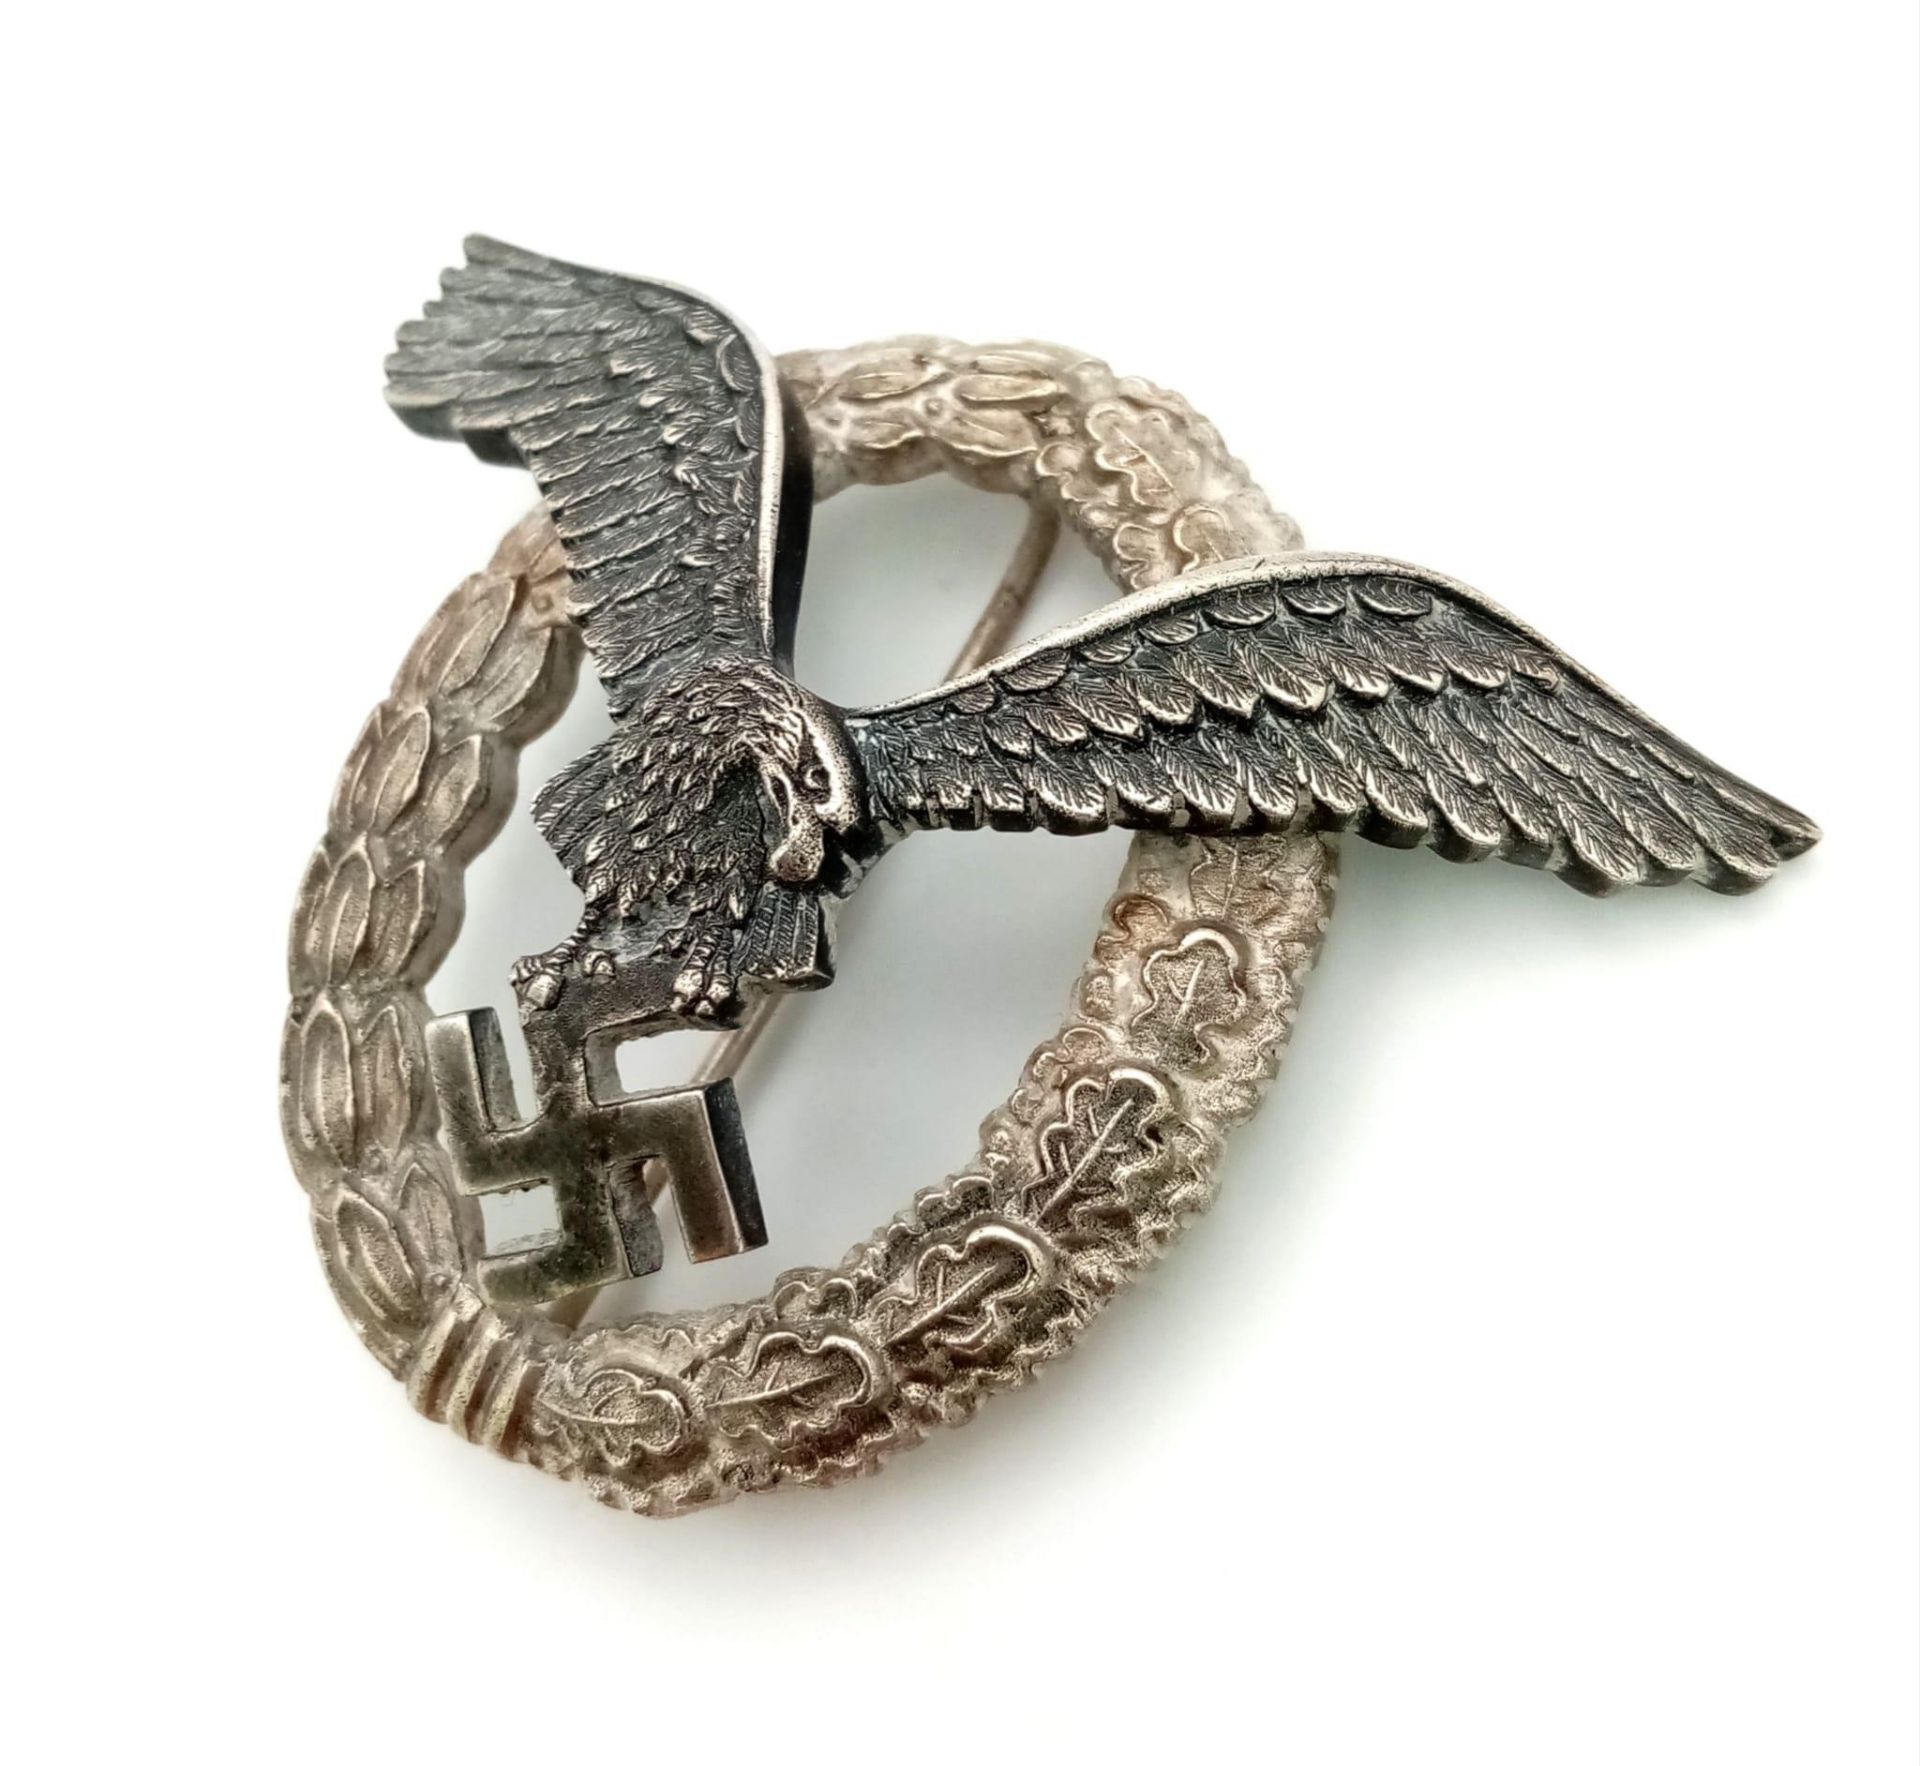 3rd Reich Luftwaffe Pilots Badge. Maker: B & NL. (Berg & Nolte) - Bild 2 aus 4